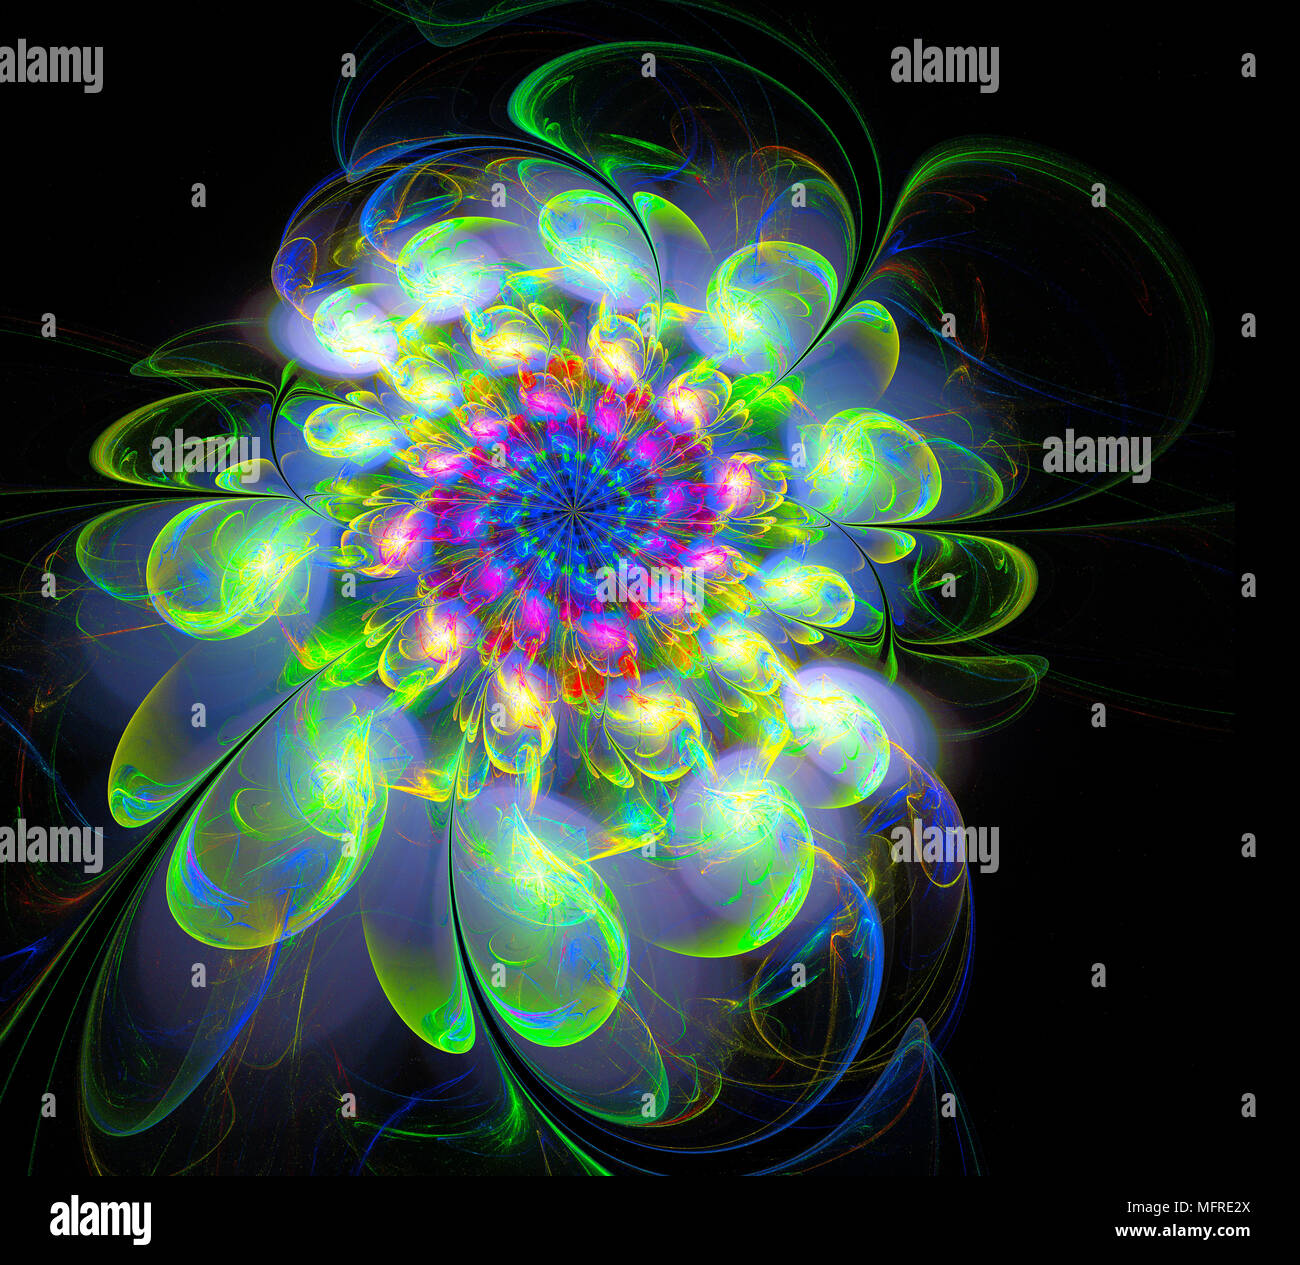 Abstrakt fractal futuristische farbenfrohe Blumenmuster. 3D-Render Abbildung eines Fraktals. Kunst fantasy Muster. Digitale Kunst Design Element. abstract p Stockfoto